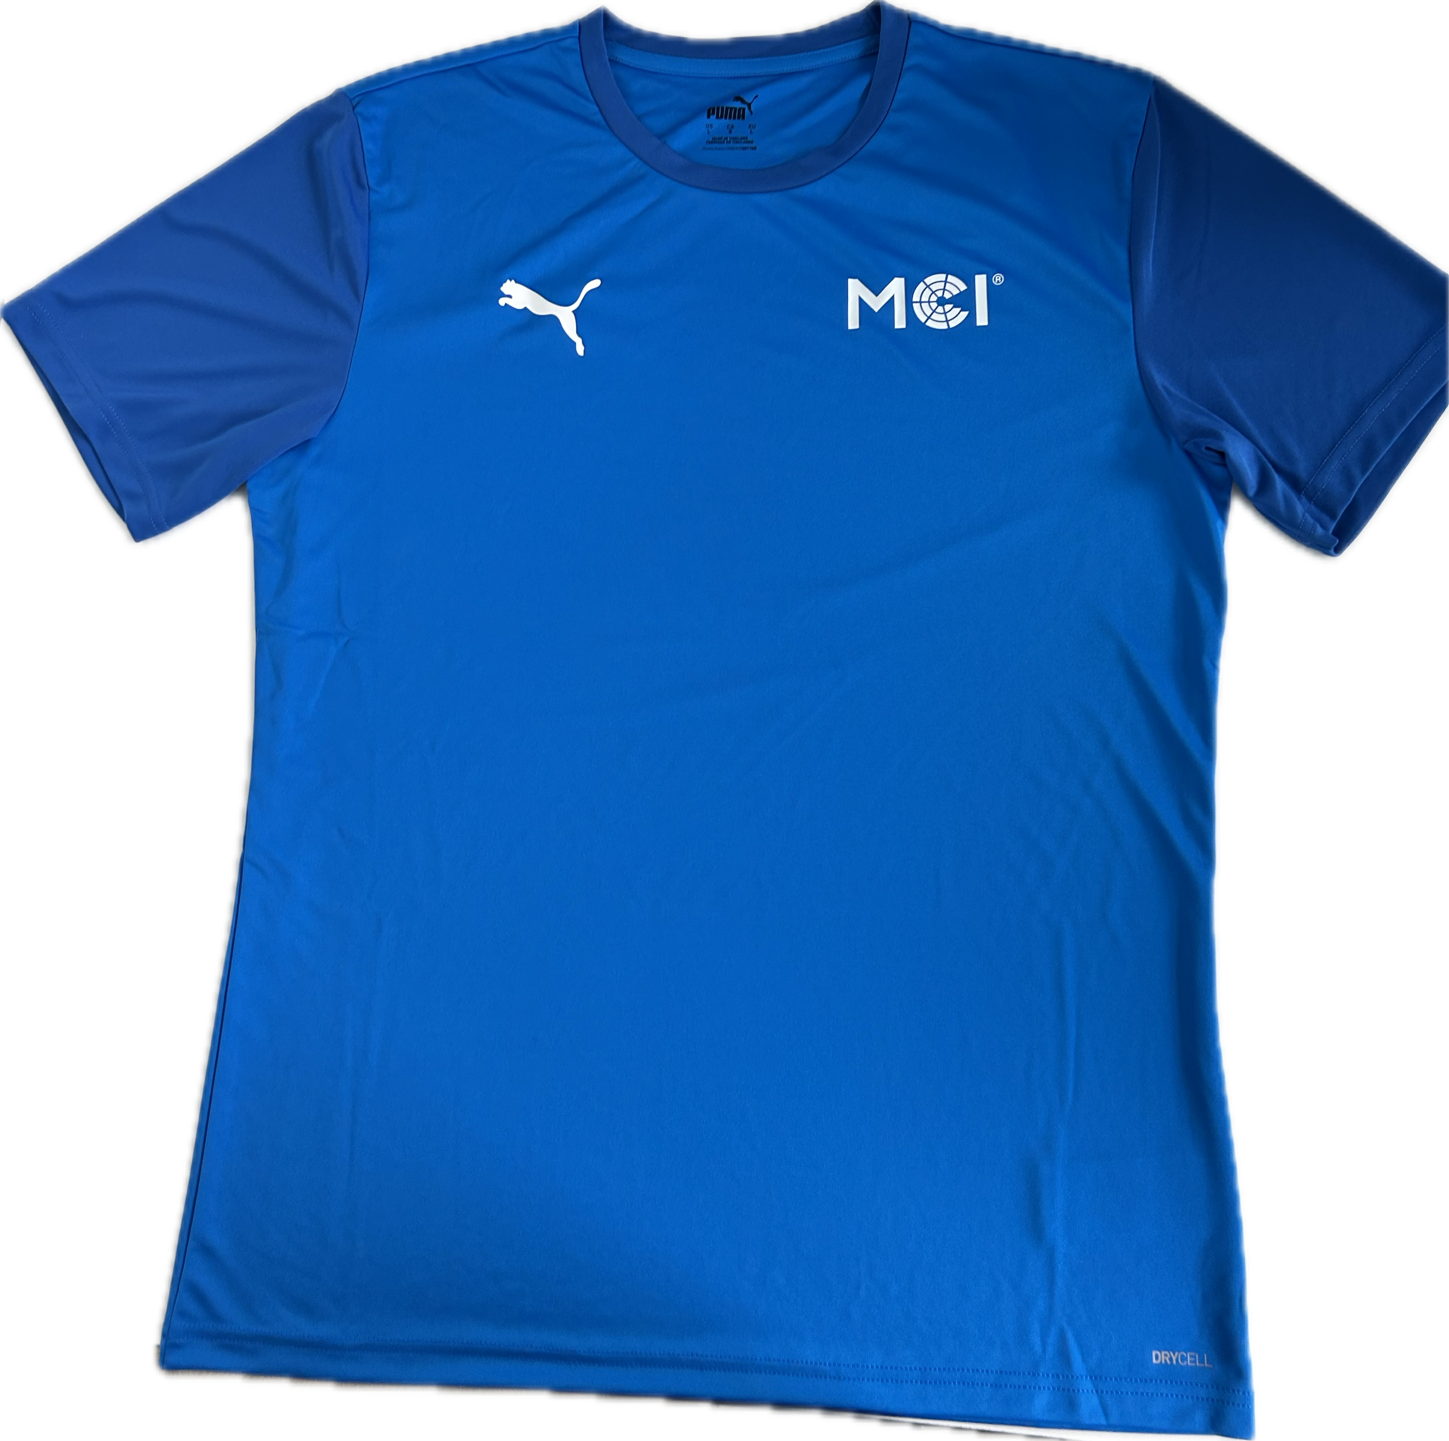 Puma x MCI sports shirt